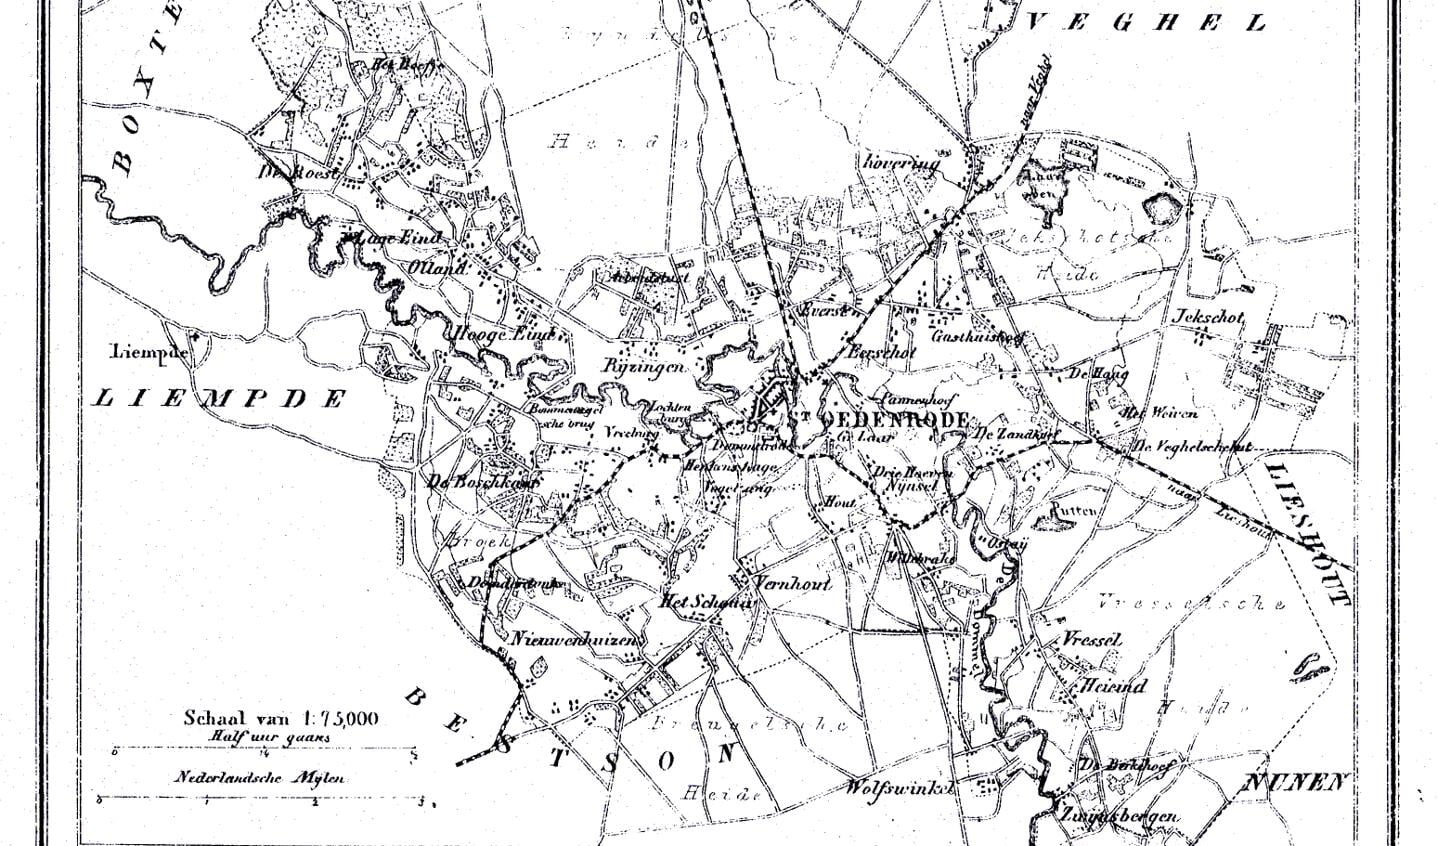 Kaart van Sint-Oedenrode uit 1860 met de namen van haar buren